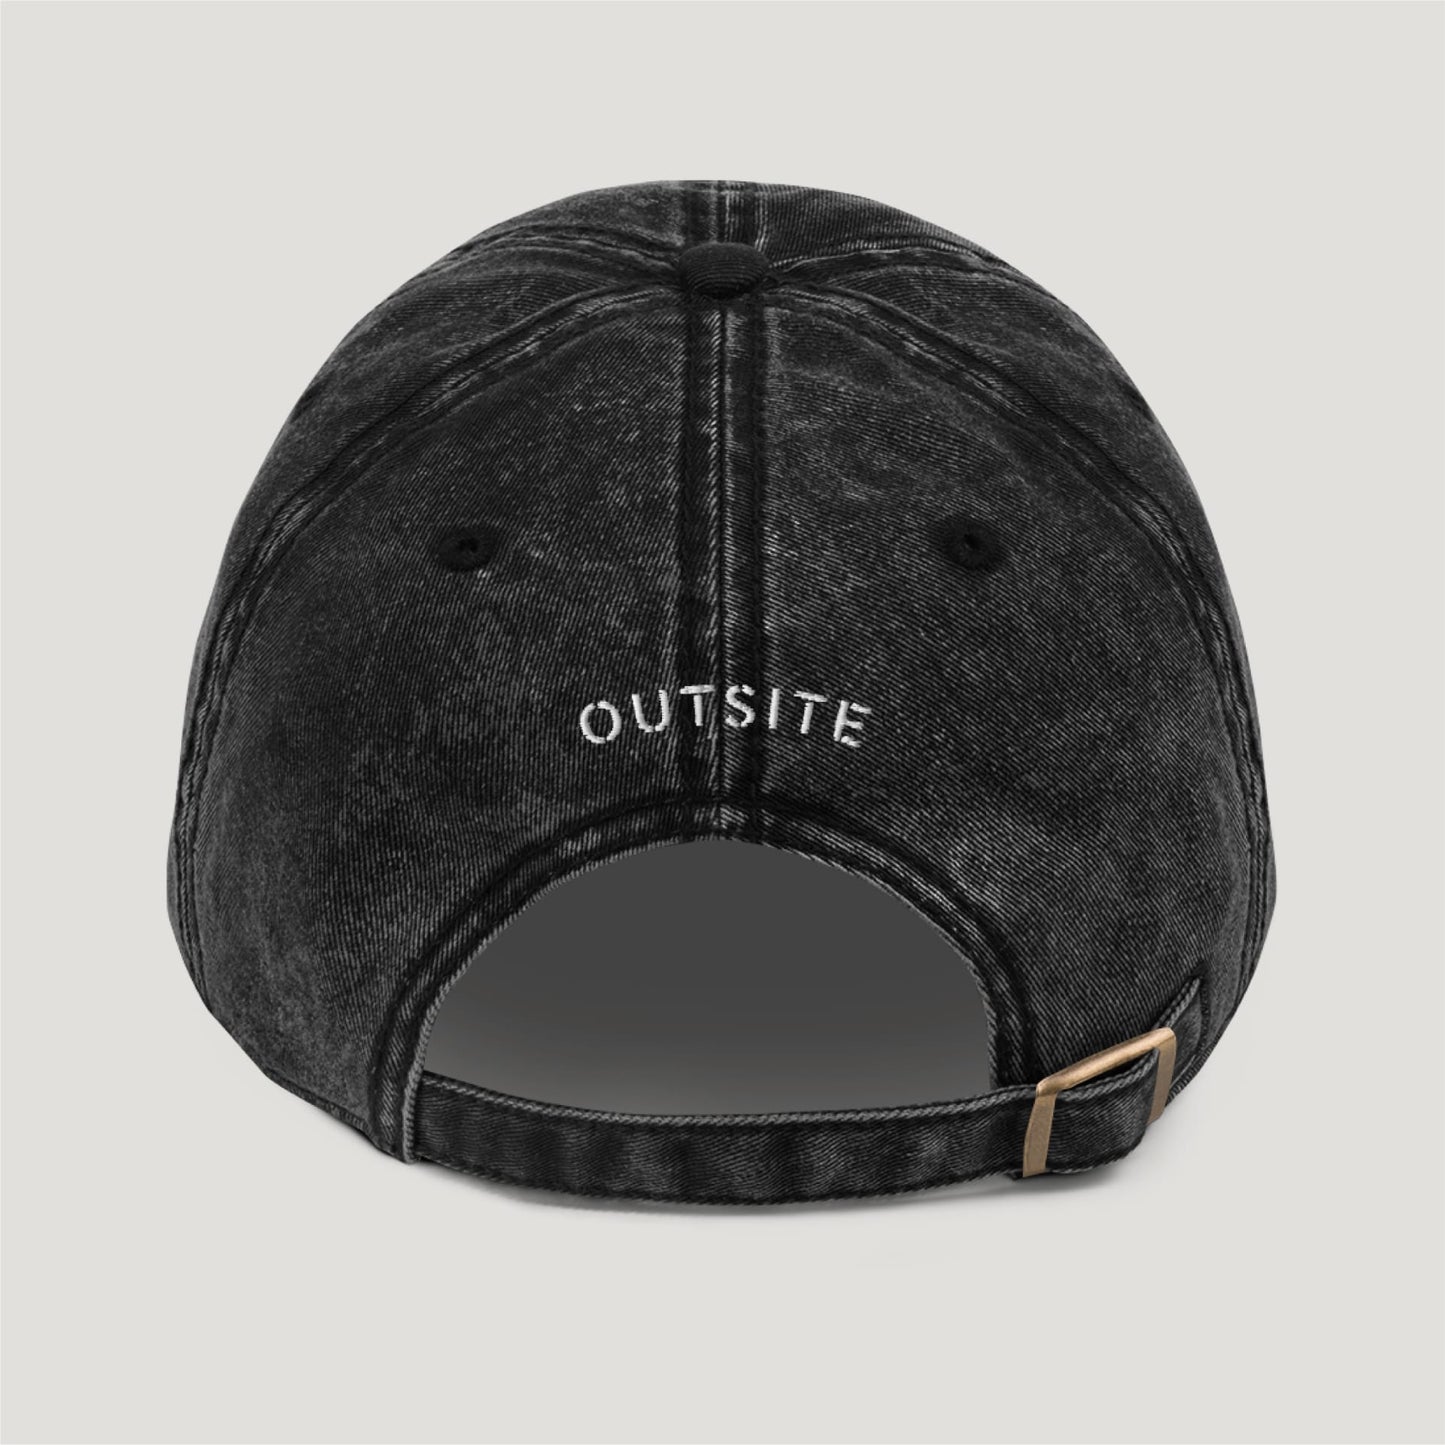 Outsite Original Cap